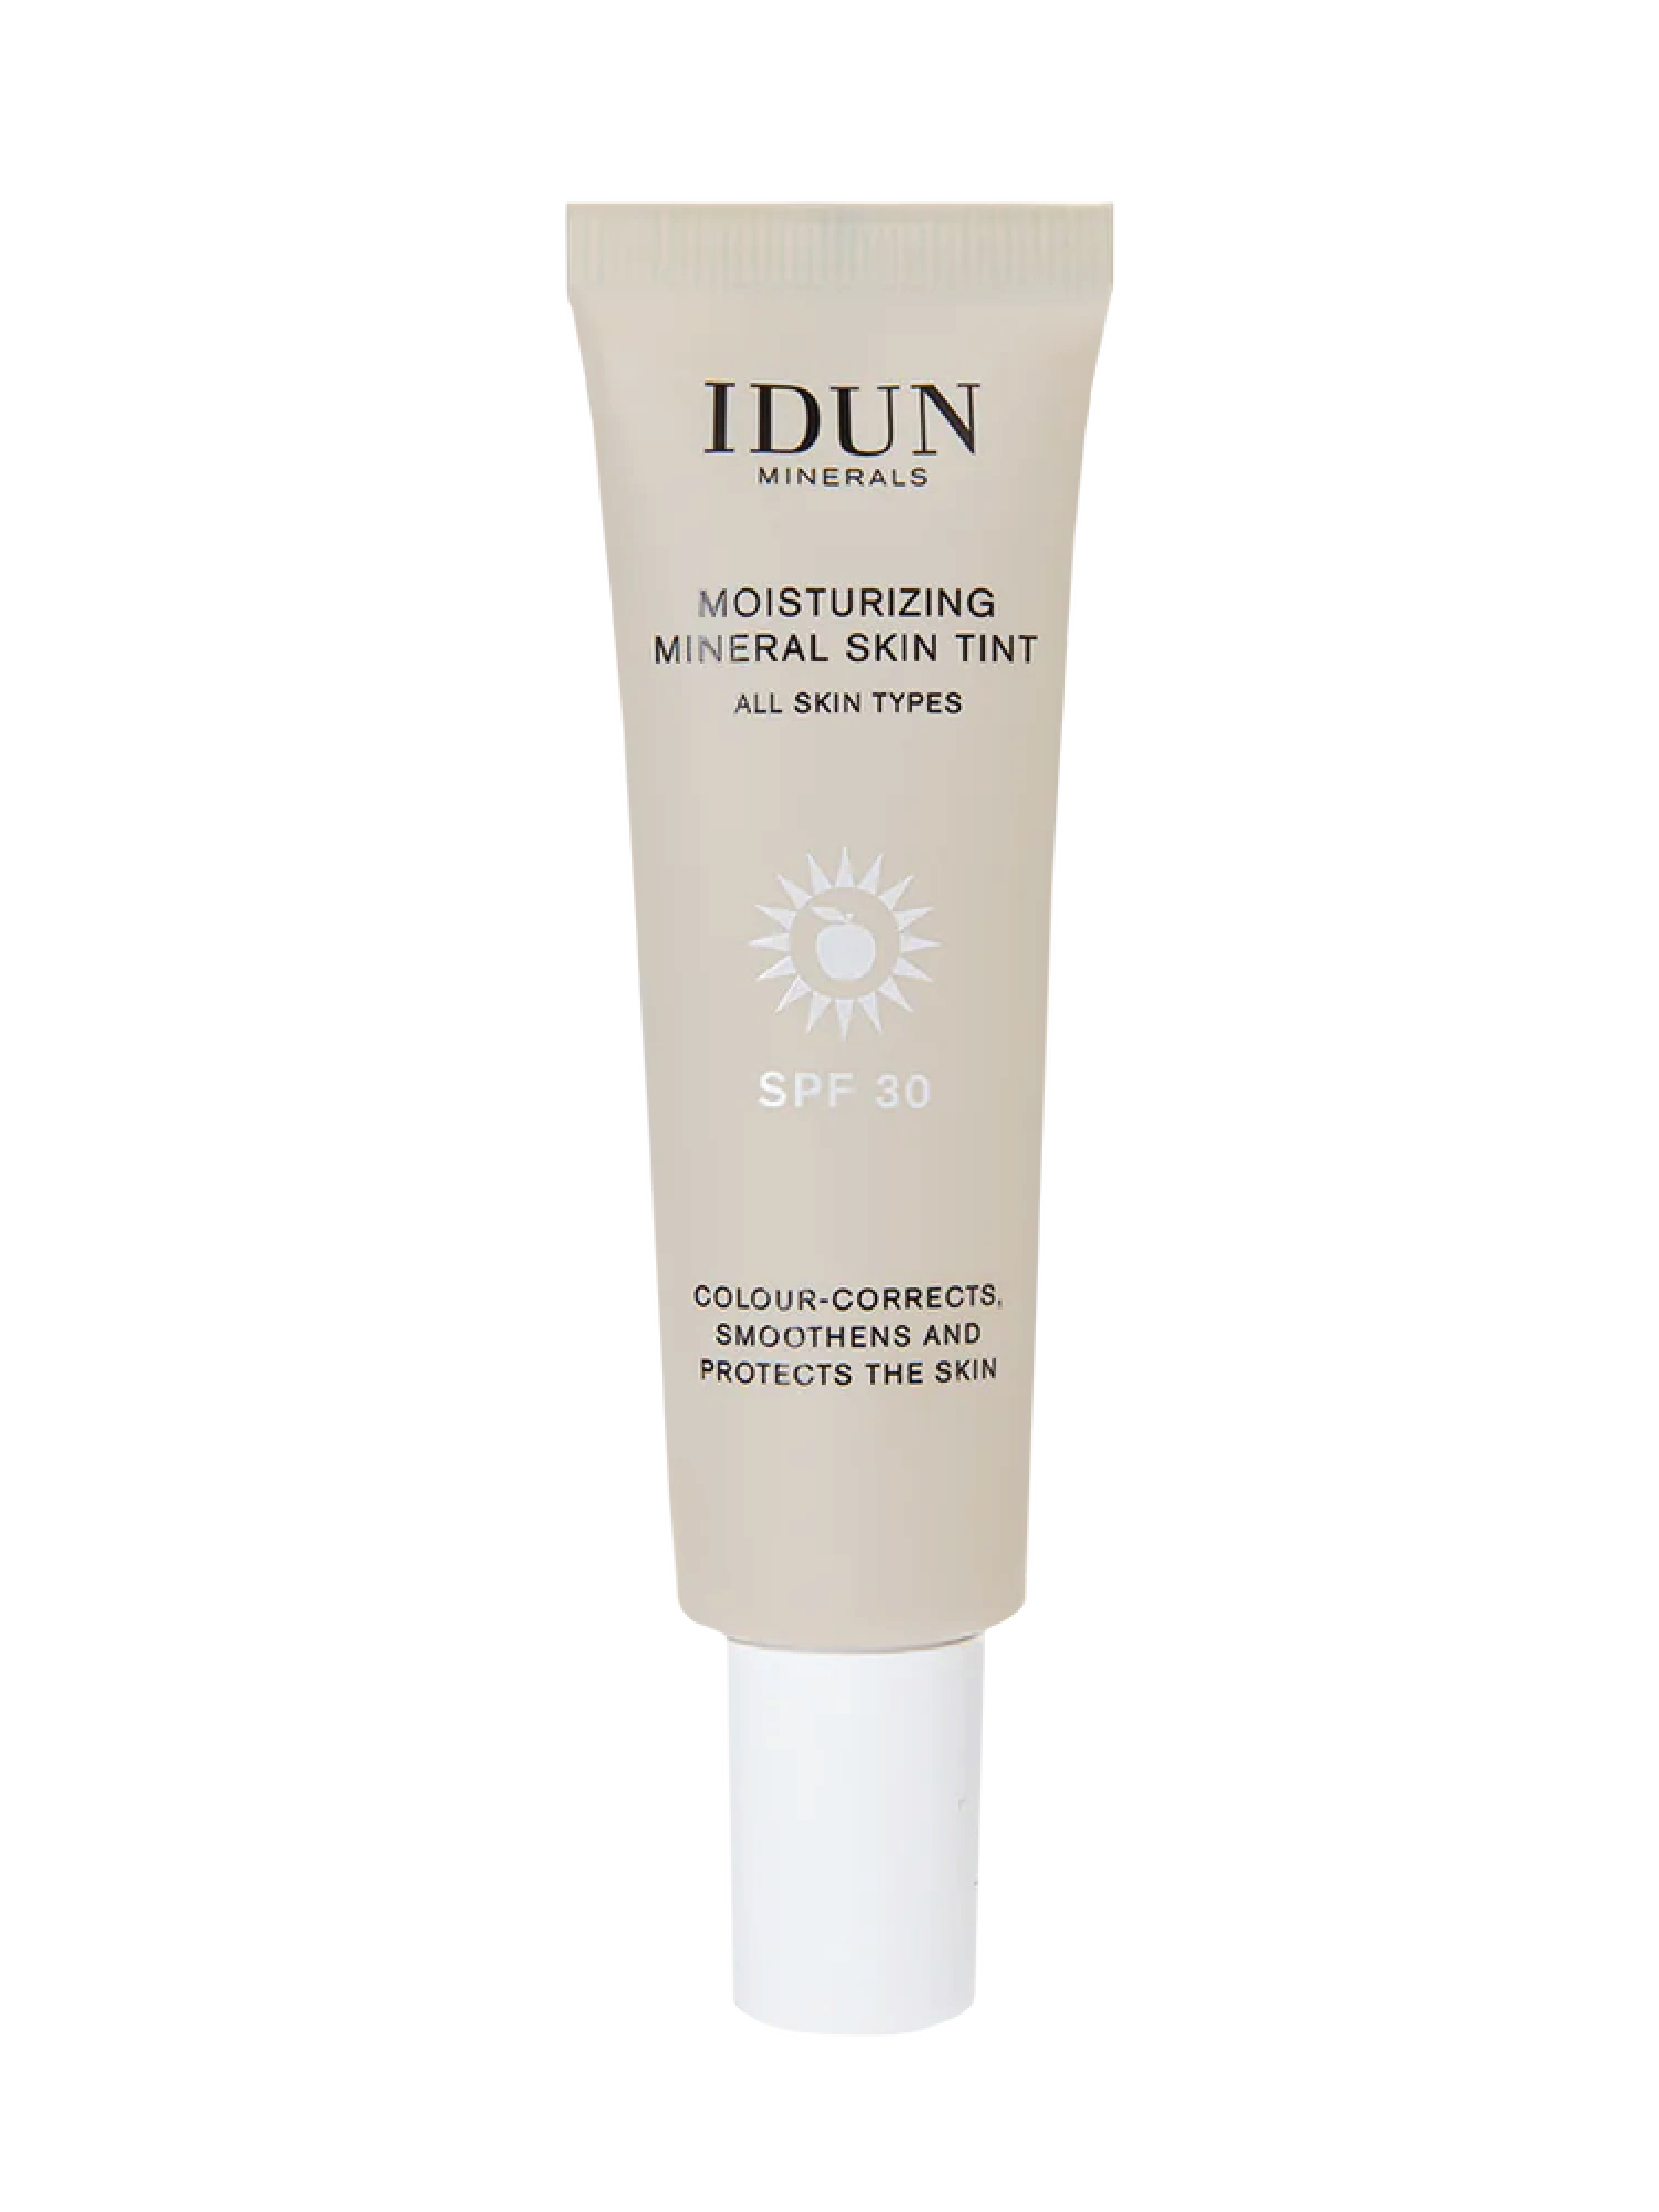 IDUN Minerals Moisturizing Mineral Skin Tint SPF 30, Light, 27 ml